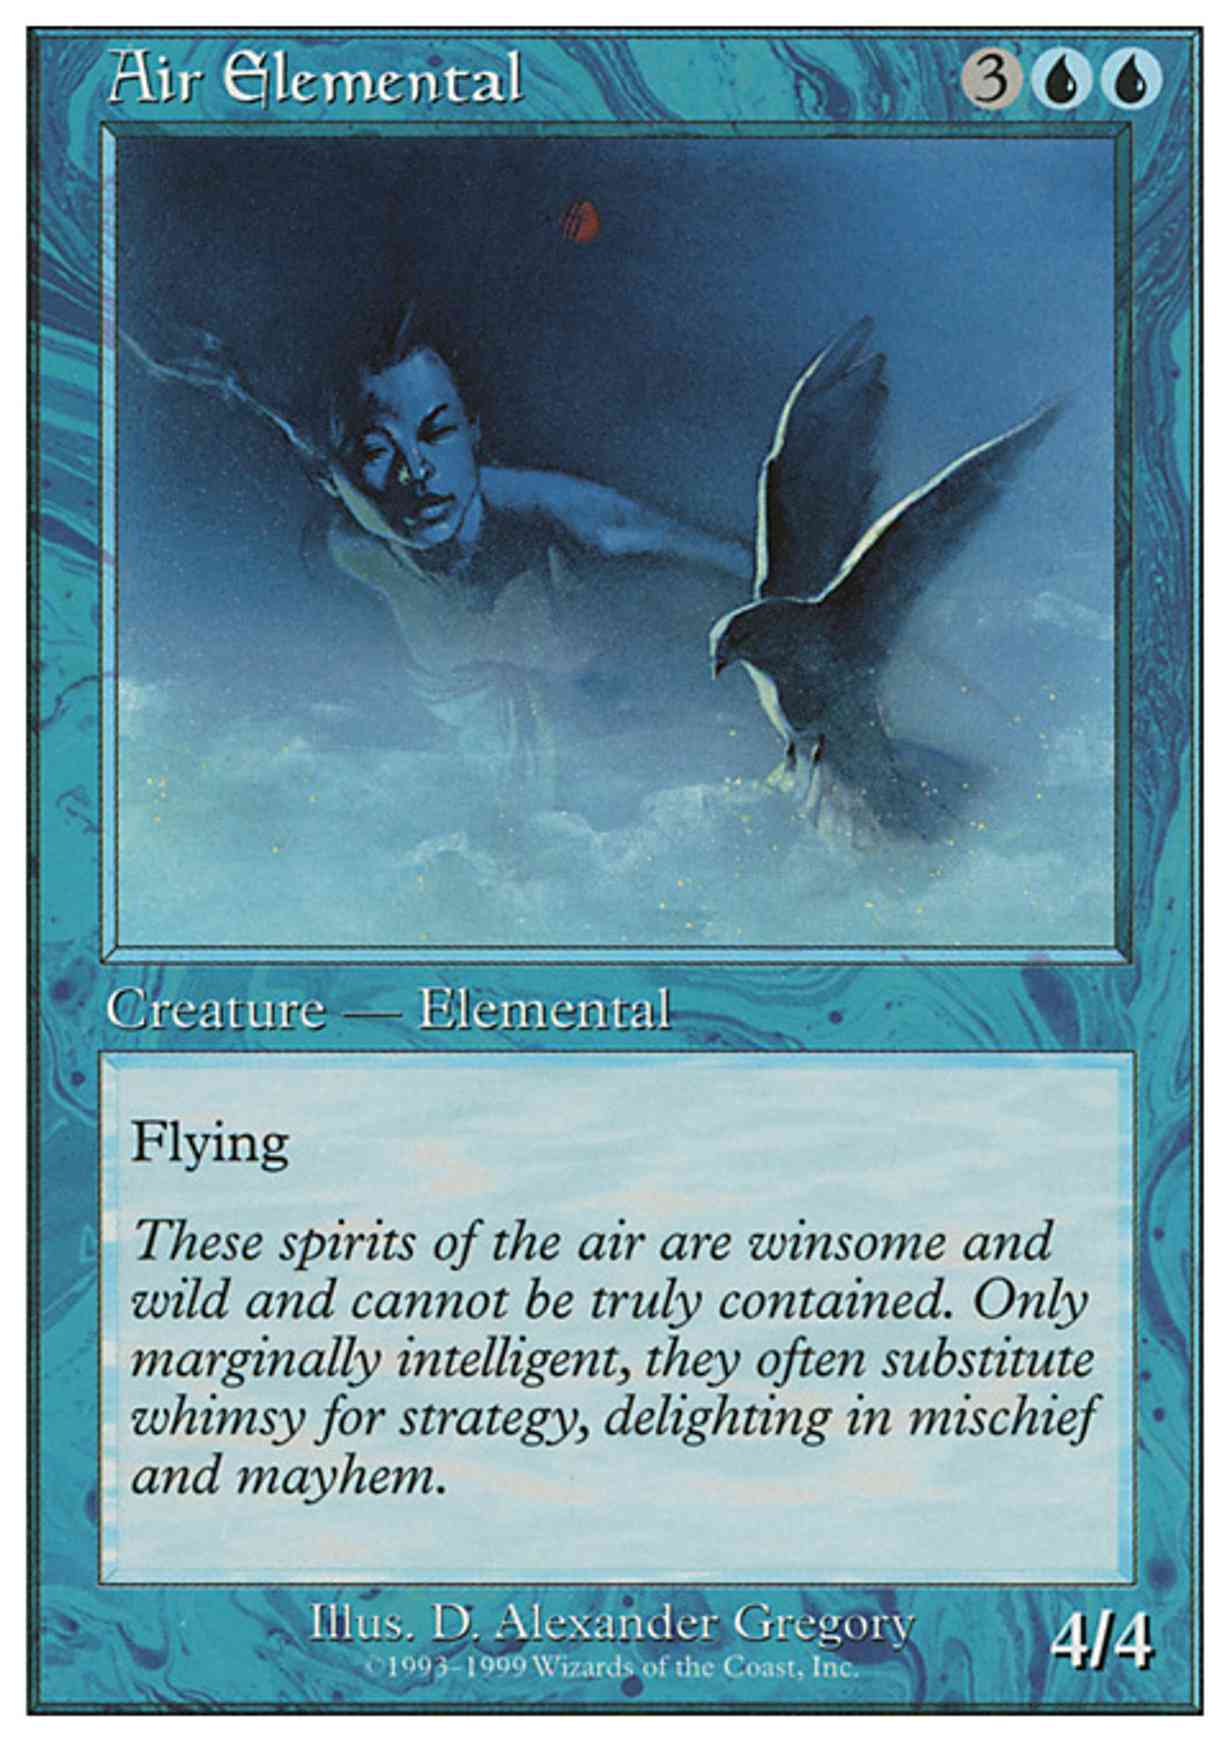 Air Elemental magic card front